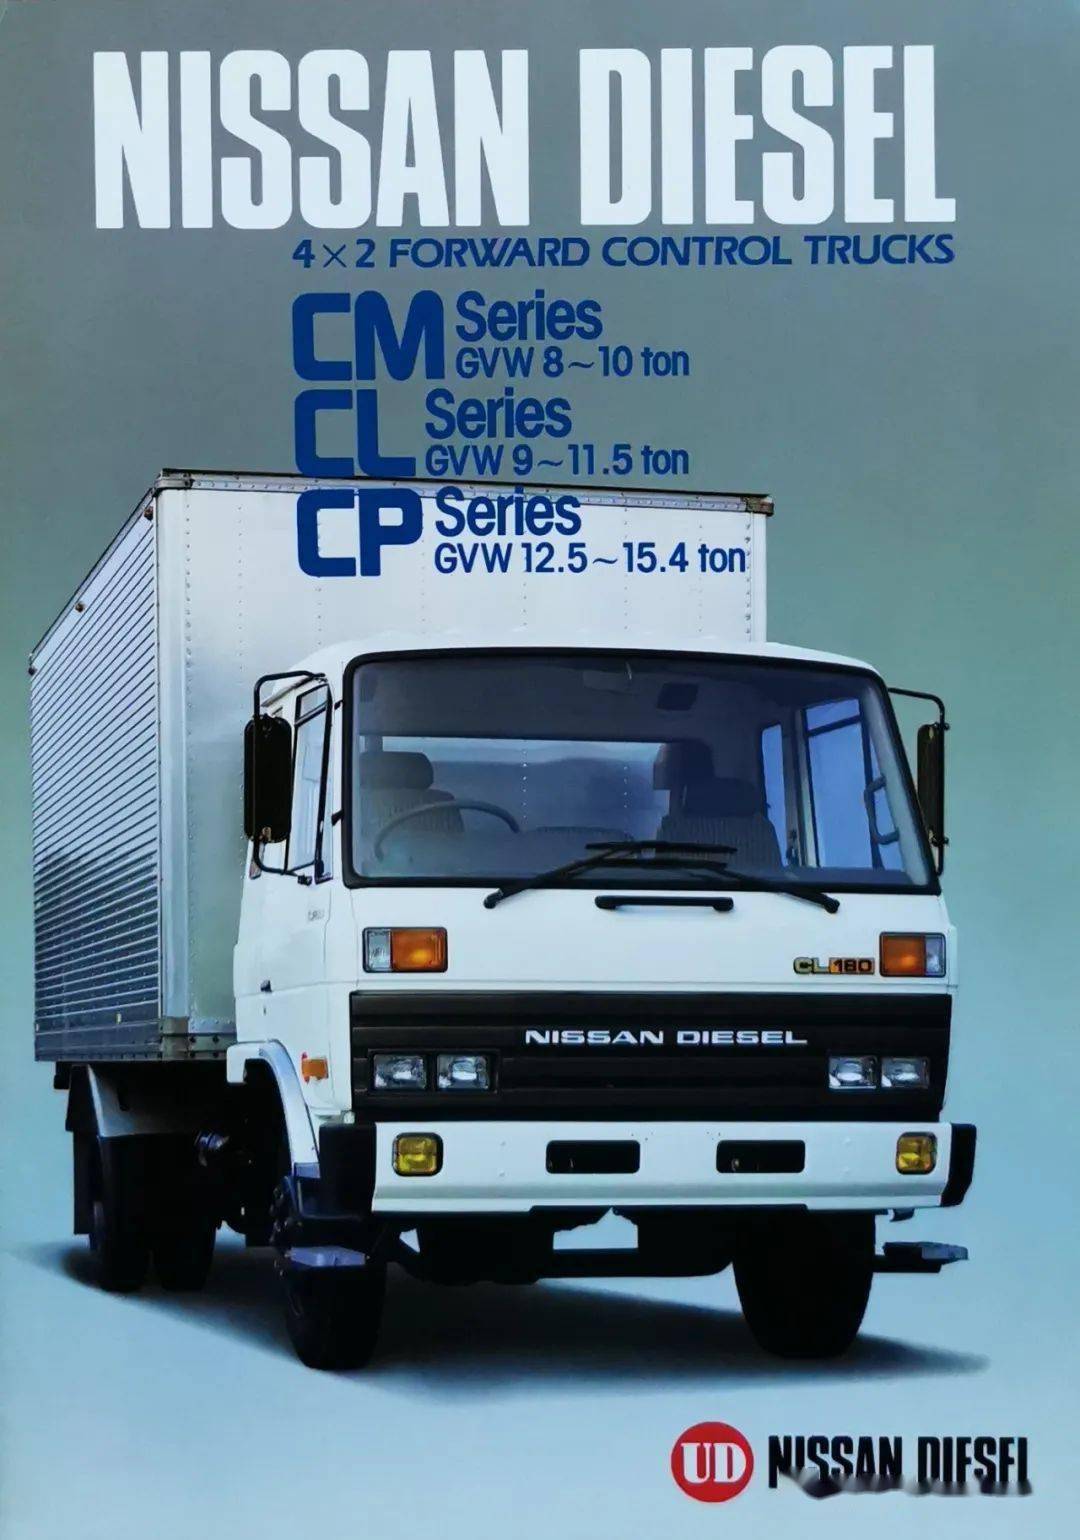 东风原型车国内也曾进口过上世纪80年代的日产柴cmclcp资料样本